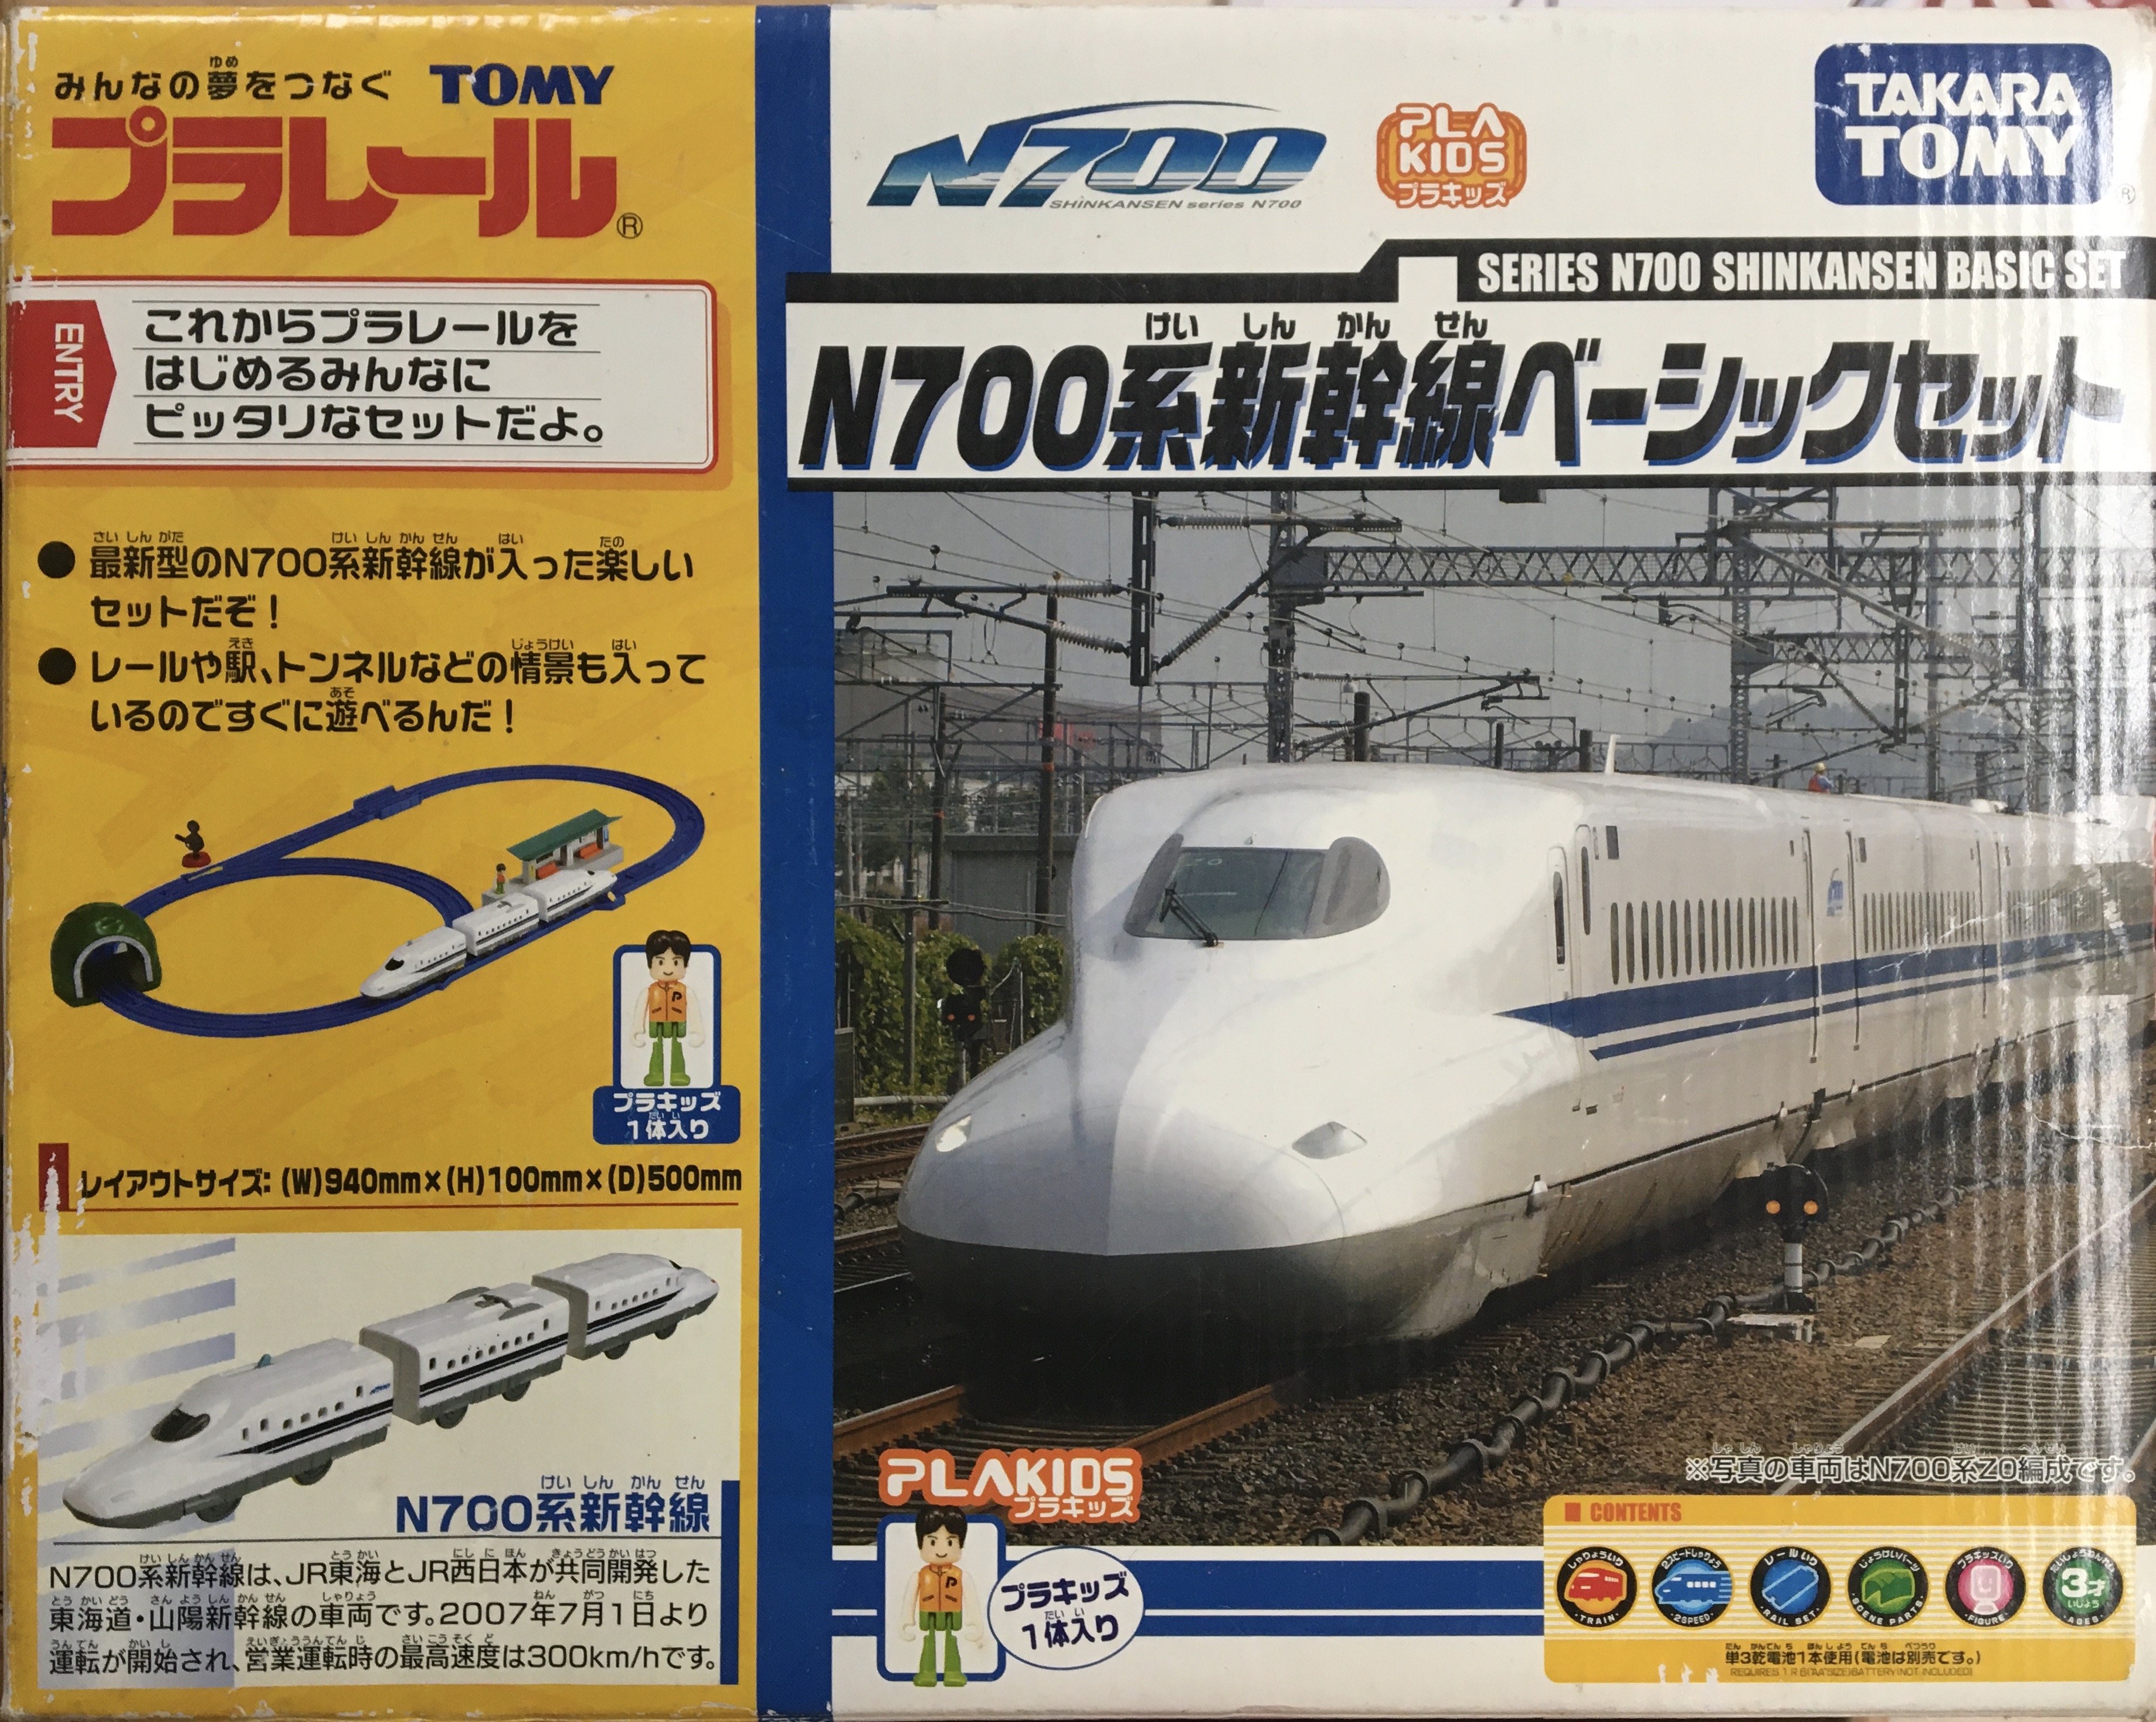  プラレール S-03 E5系新幹線はやぶさ (連結仕様) (2014年新発売版) 